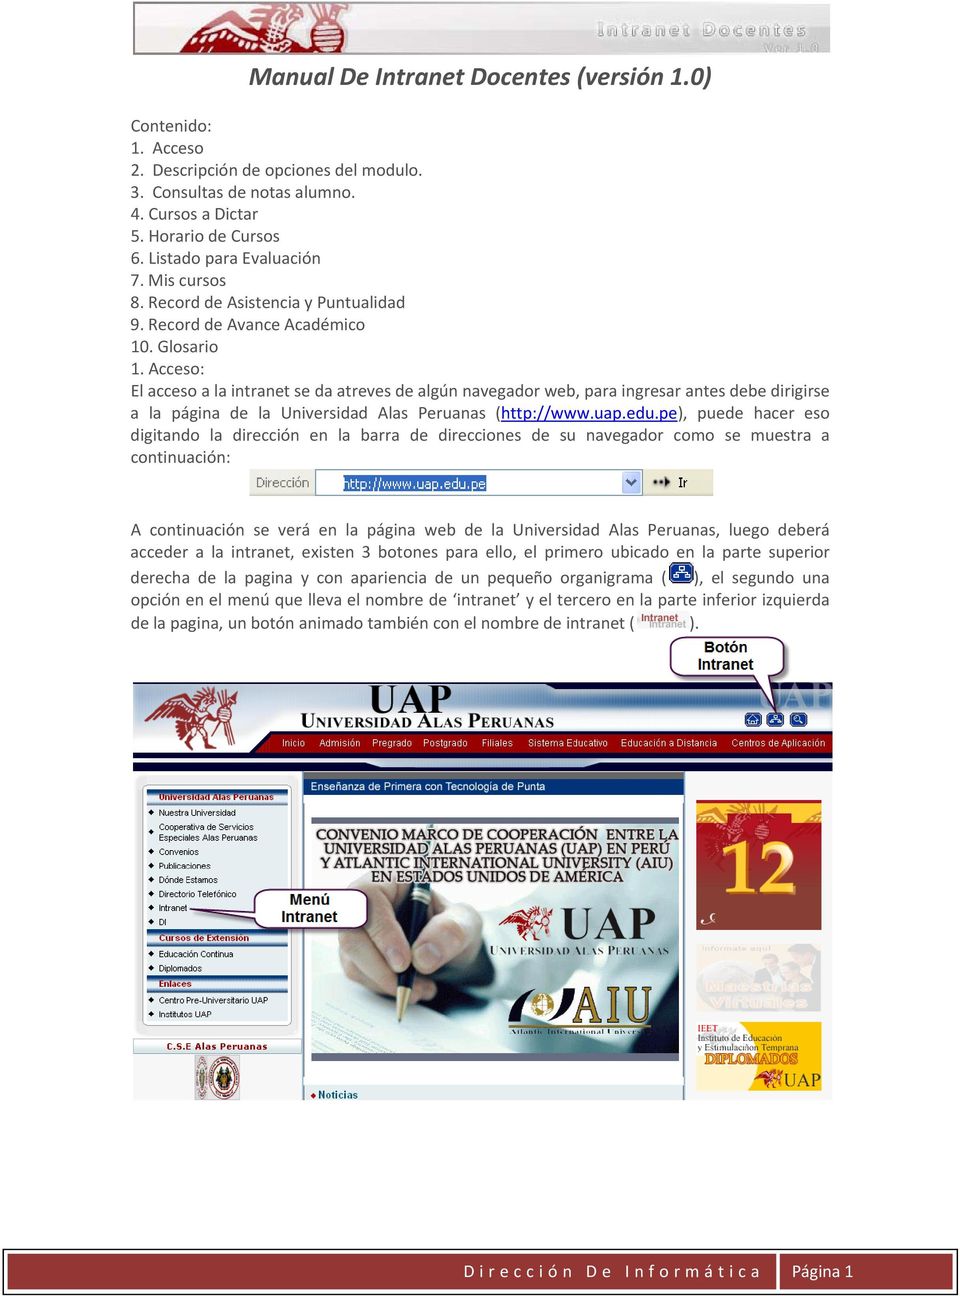 Acceso: El acceso a la intranet se da atreves de algún navegador web, para ingresar antes debe dirigirse a la página de la Universidad Alas Peruanas (http://www.uap.edu.